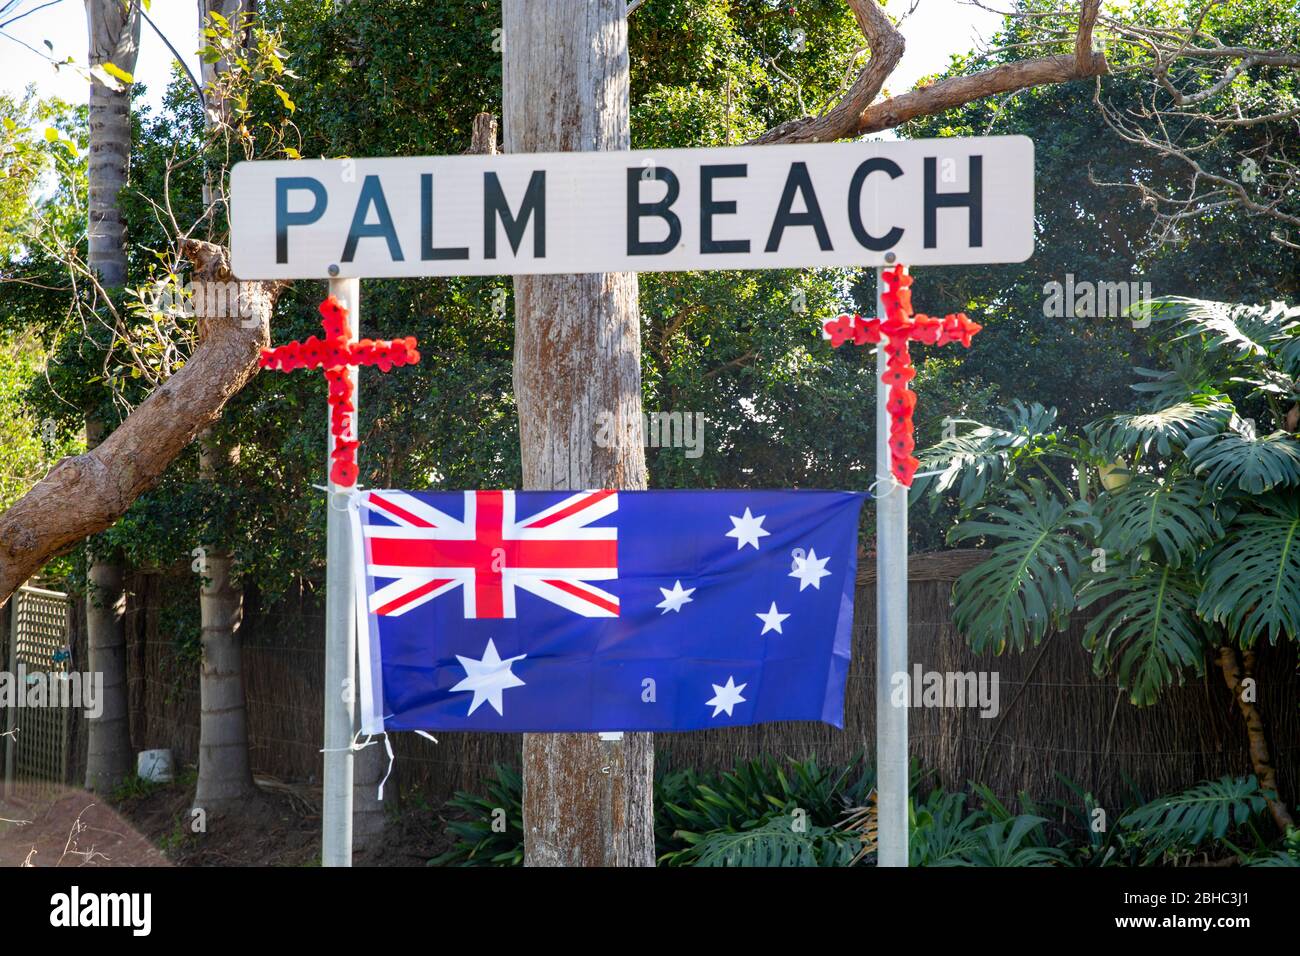 Palm Beach Sydney, Australien. COVID-19 Beschränkungen haben australische Gemeinschaften daran gehindert, typische Märsche und Paraden zu veranstalten, um an jene Australier und Neuseeländer zu erinnern, die ihr Leben in der Schlacht hingaben. In Palm Beach und in Sydney haben die Gemeinden Straßenschilder und ihre Häuser in Respekt dekoriert. Credit Martin Berry/Alamy Live News Stockfoto